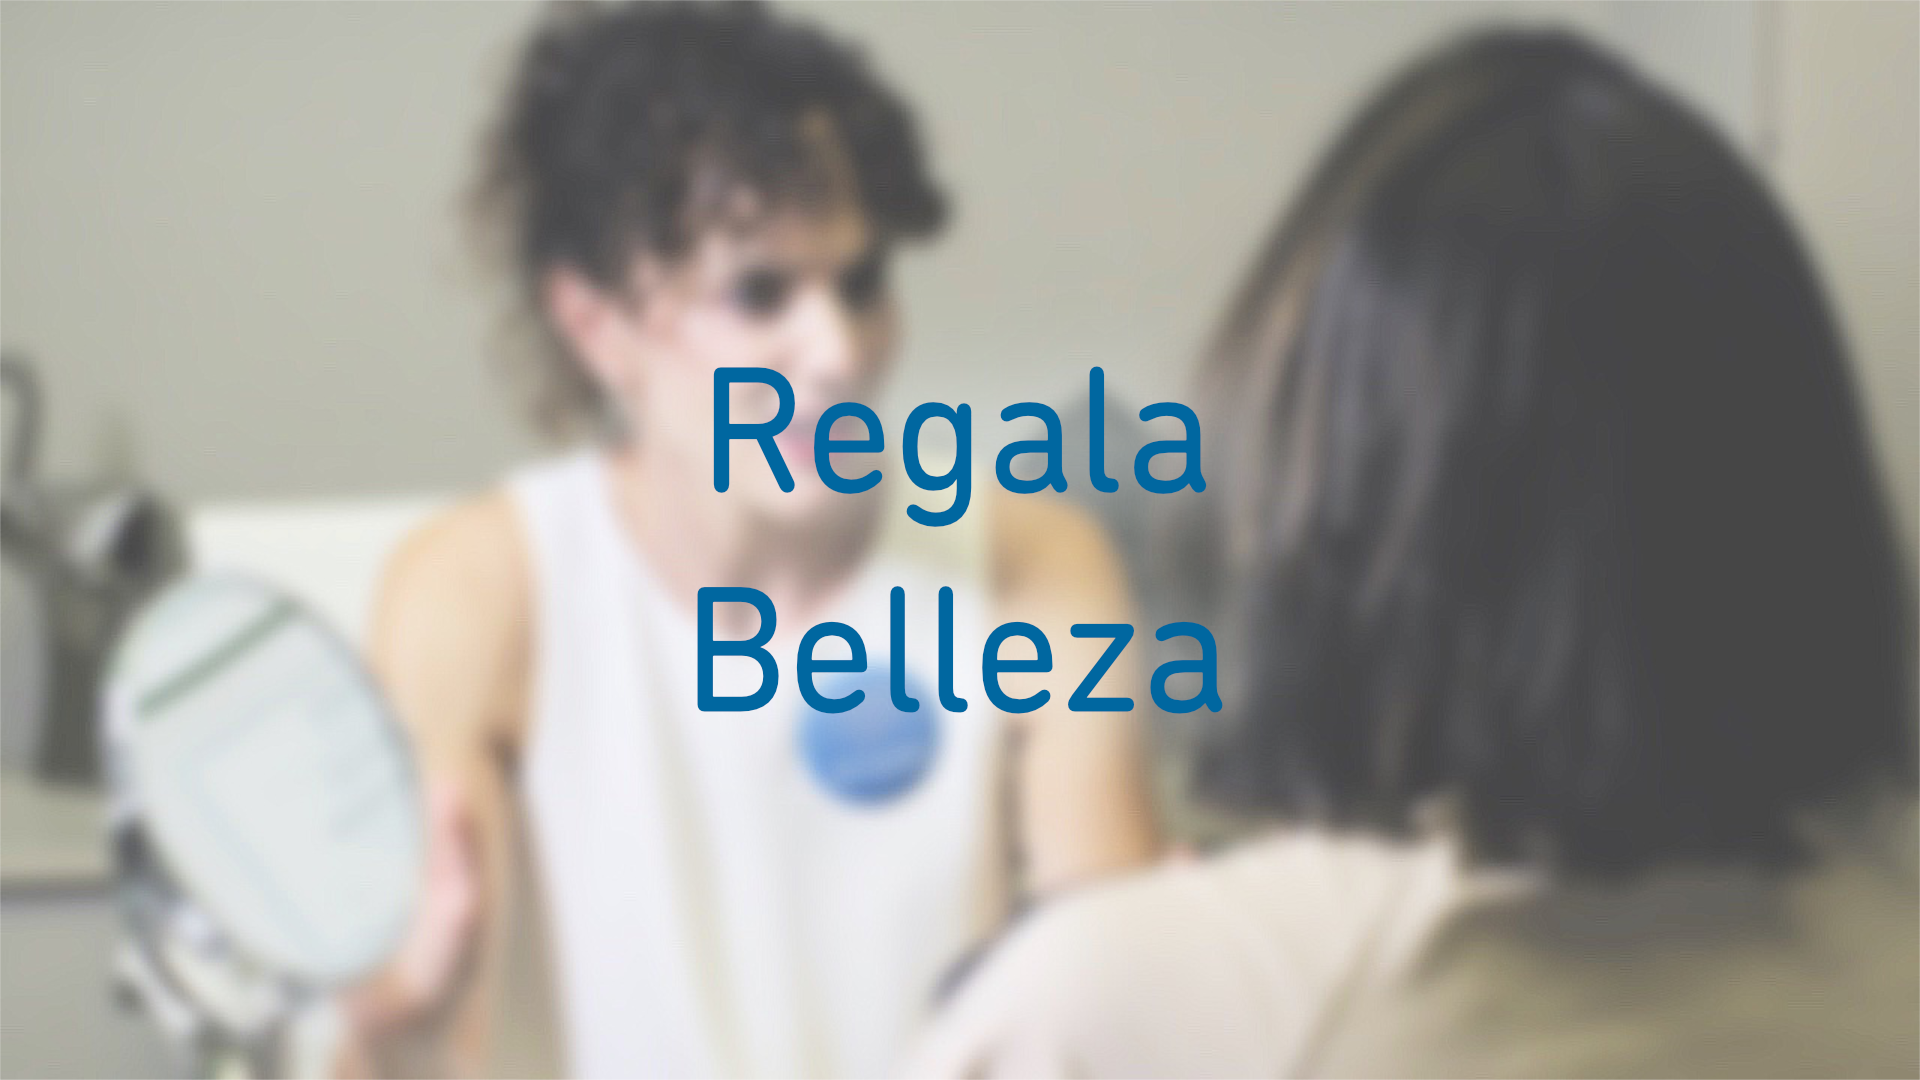 ESTELA Belleza - Regala Belleza